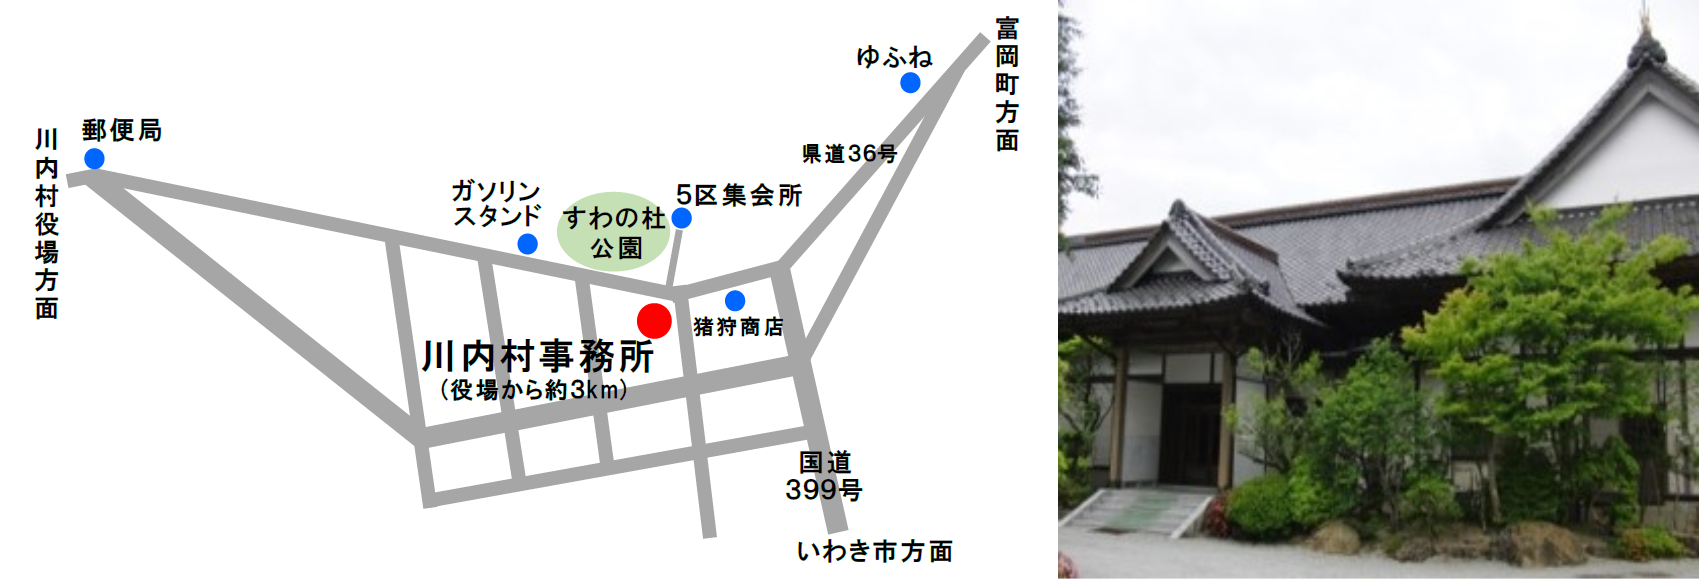 川内村事務所マップ